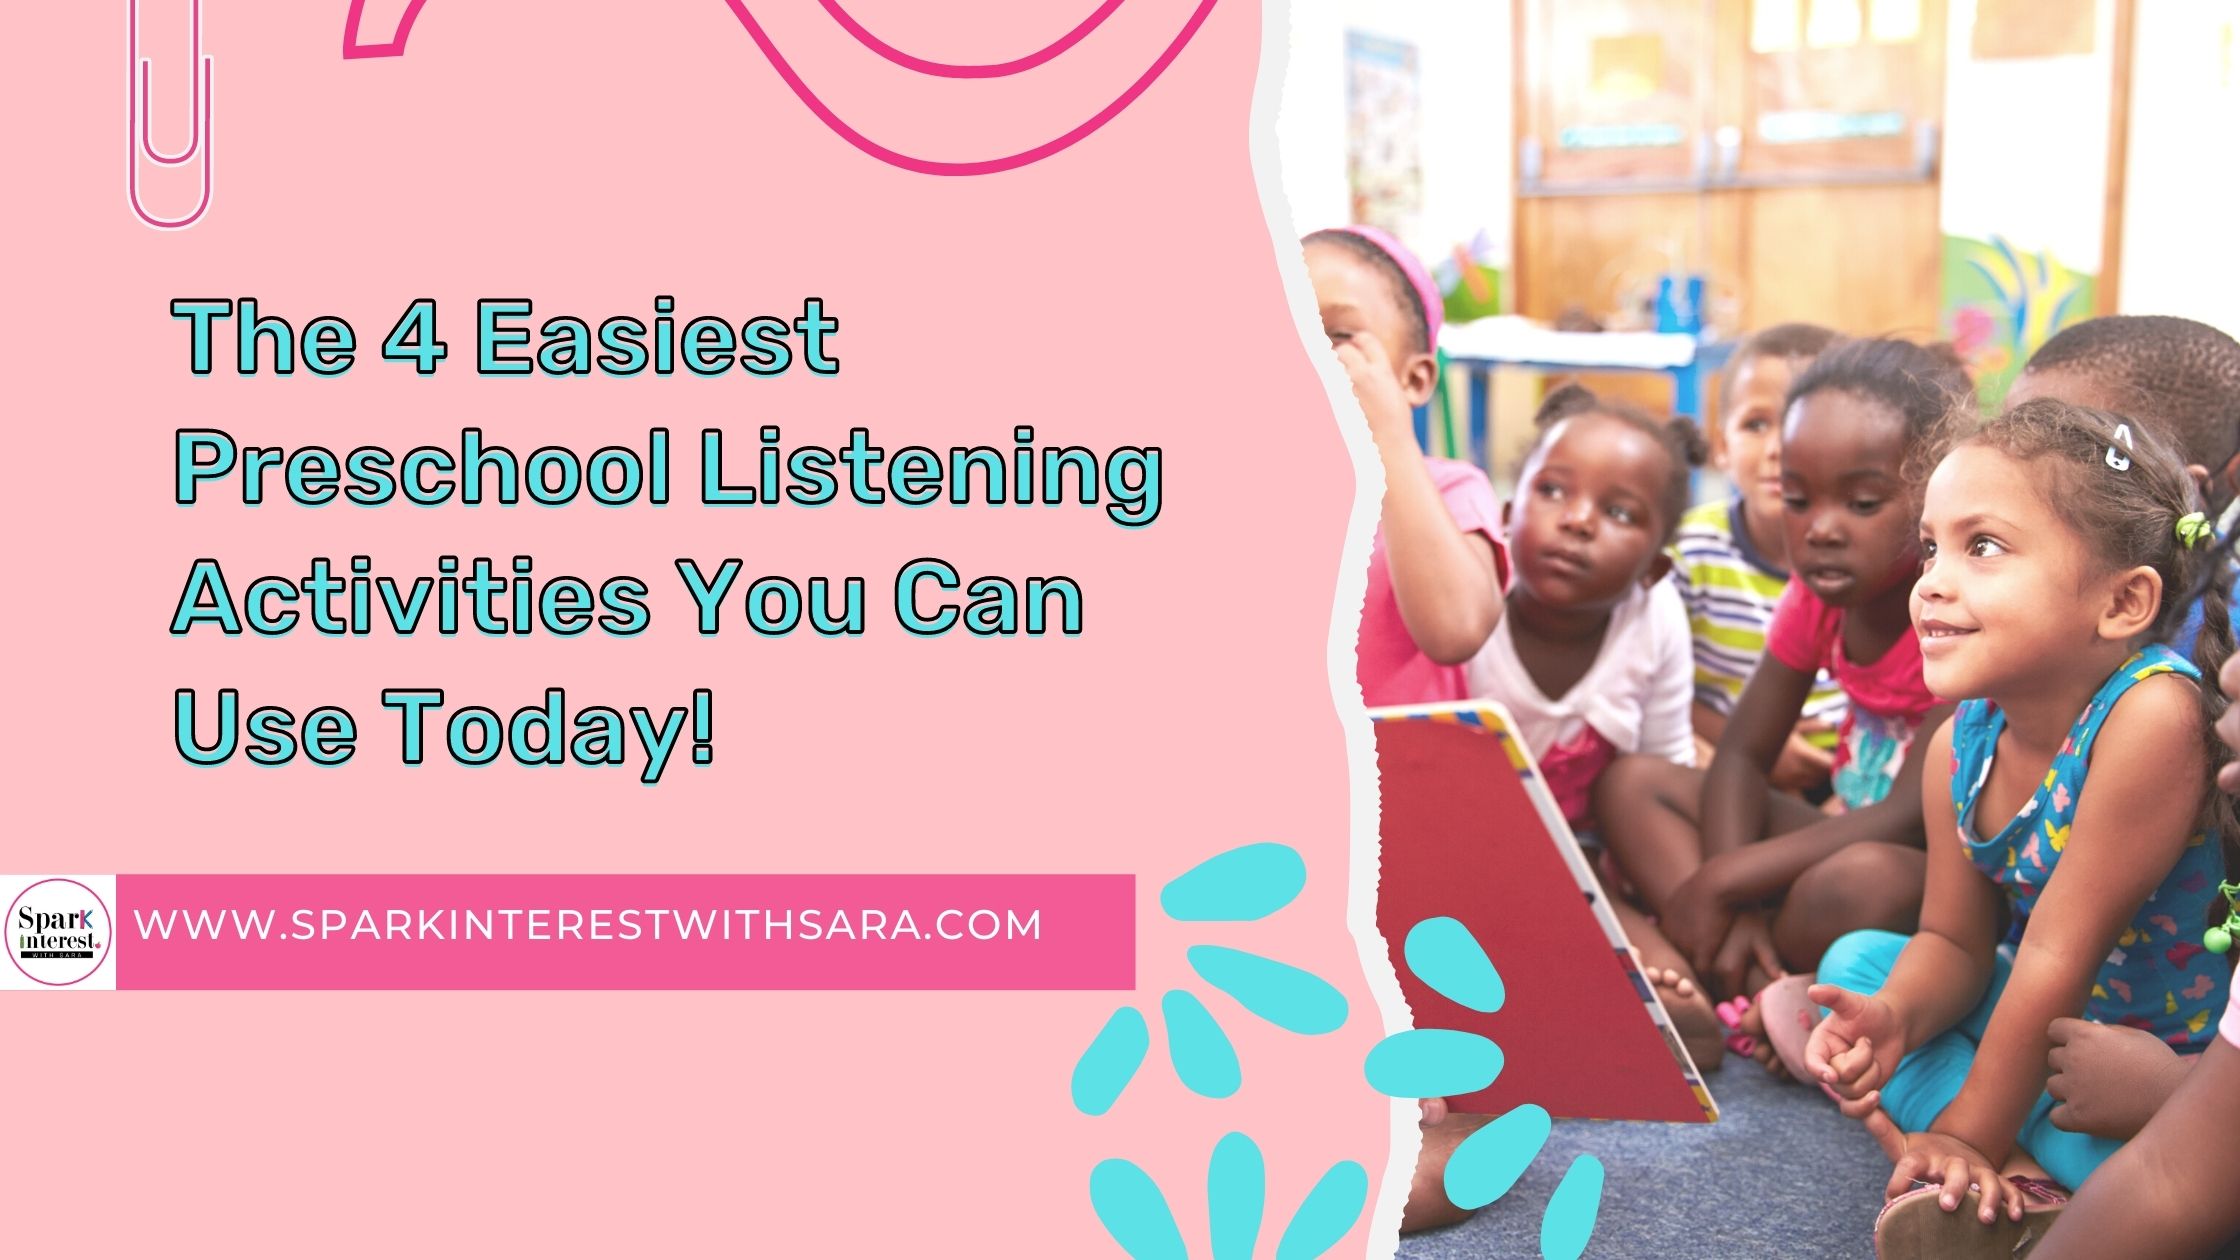 Blog post image for preschool listening activities